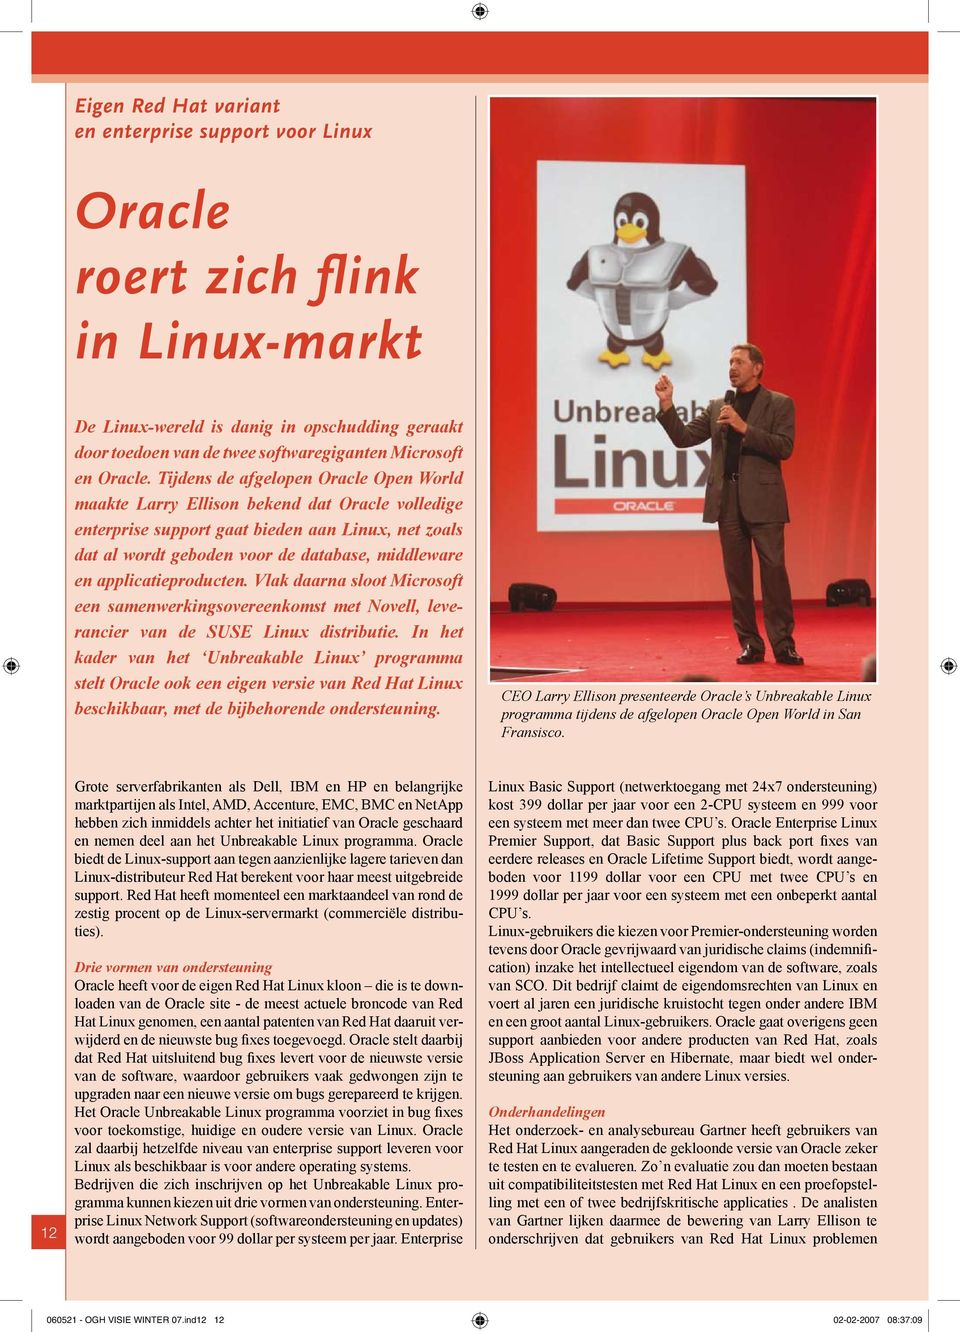 Tijdens de afgelopen Oracle Open World maakte Larry Ellison bekend dat Oracle volledige enterprise support gaat bieden aan Linux, net zoals dat al wordt geboden voor de database, middleware en